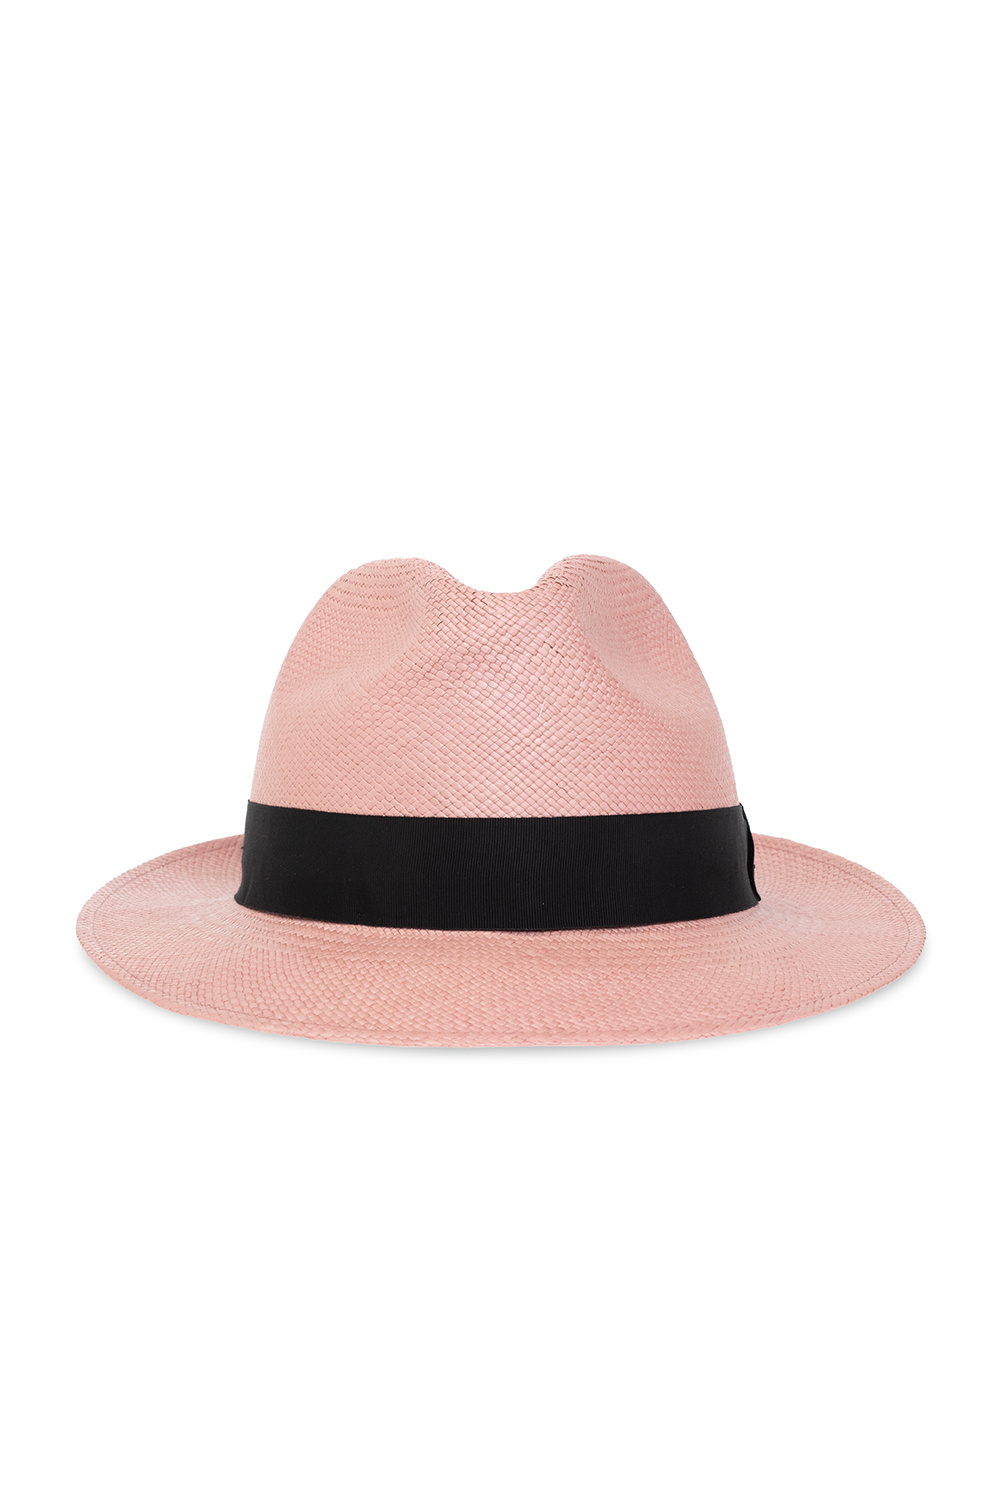 Saint Laurent Panama Sleeves hat